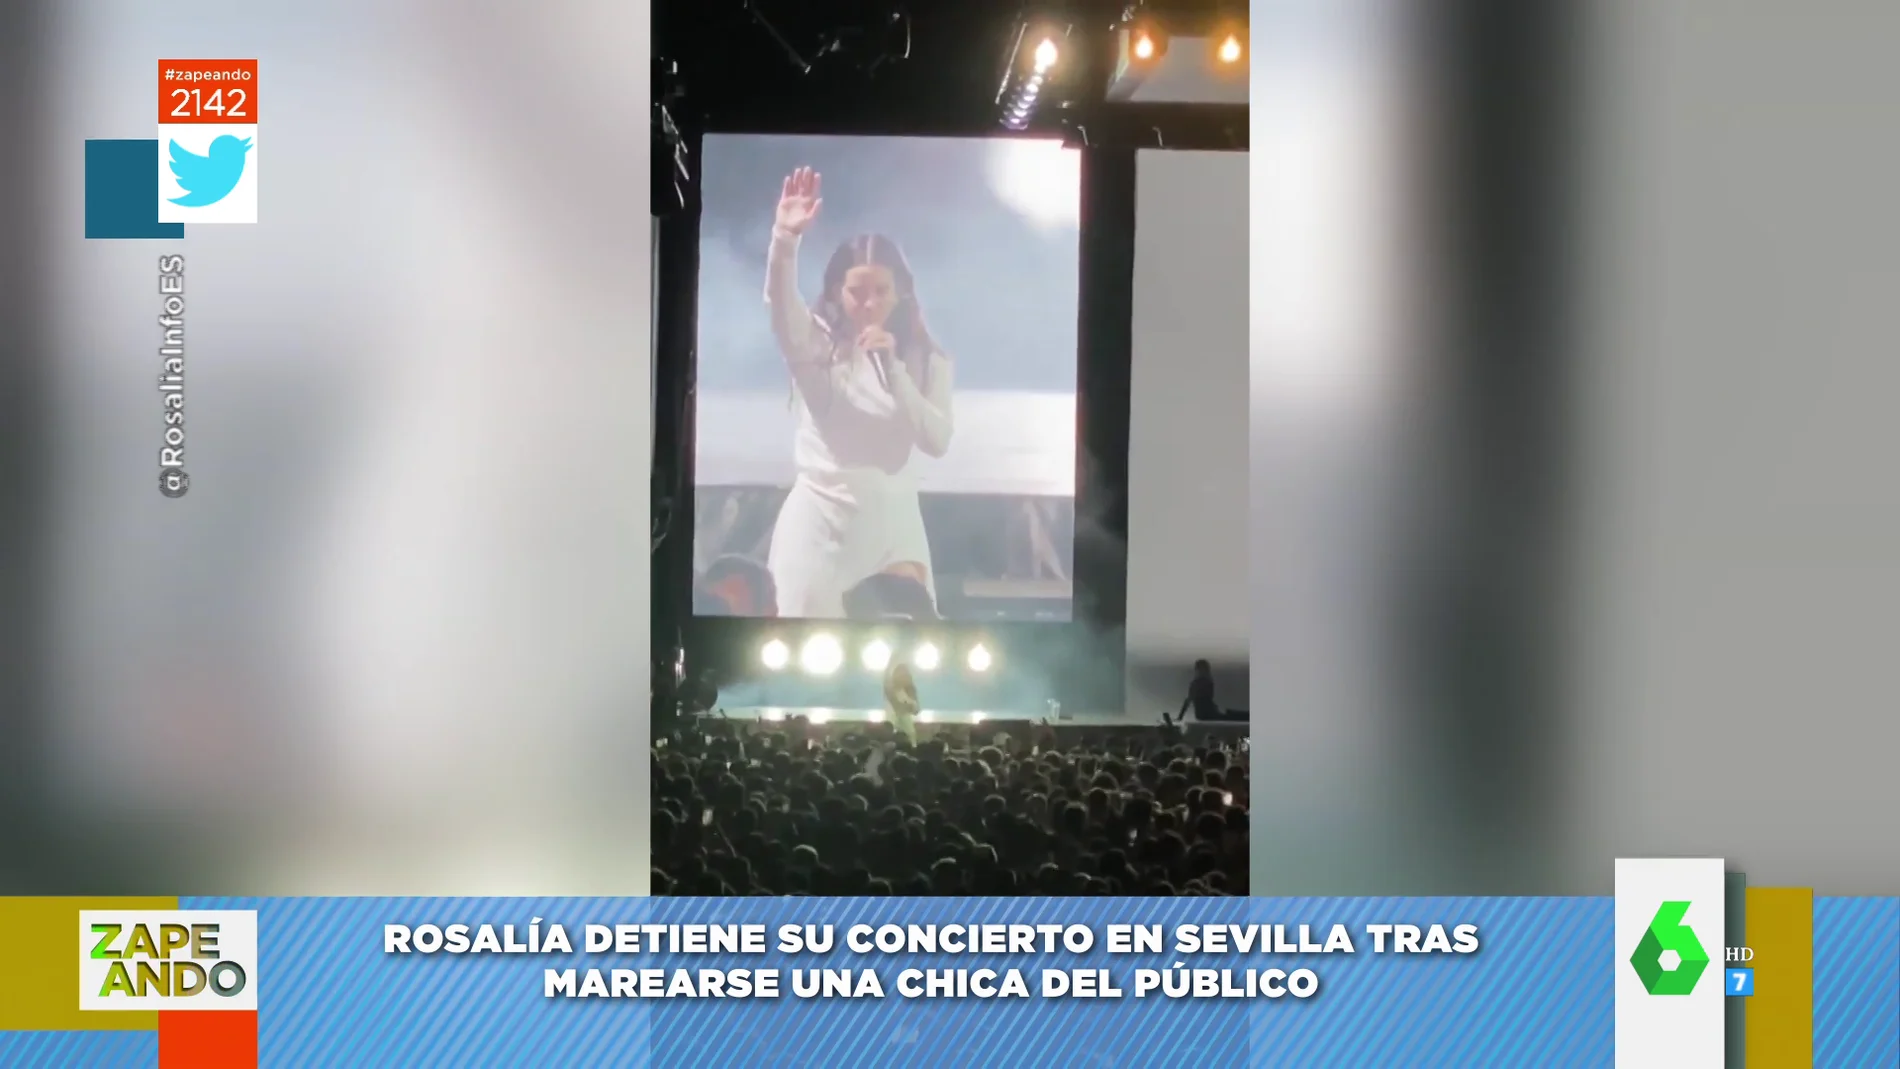 Este es el momento en el que Rosalía para su concierto tras el desmayo de un chica: "¿Qué ha pasado?"